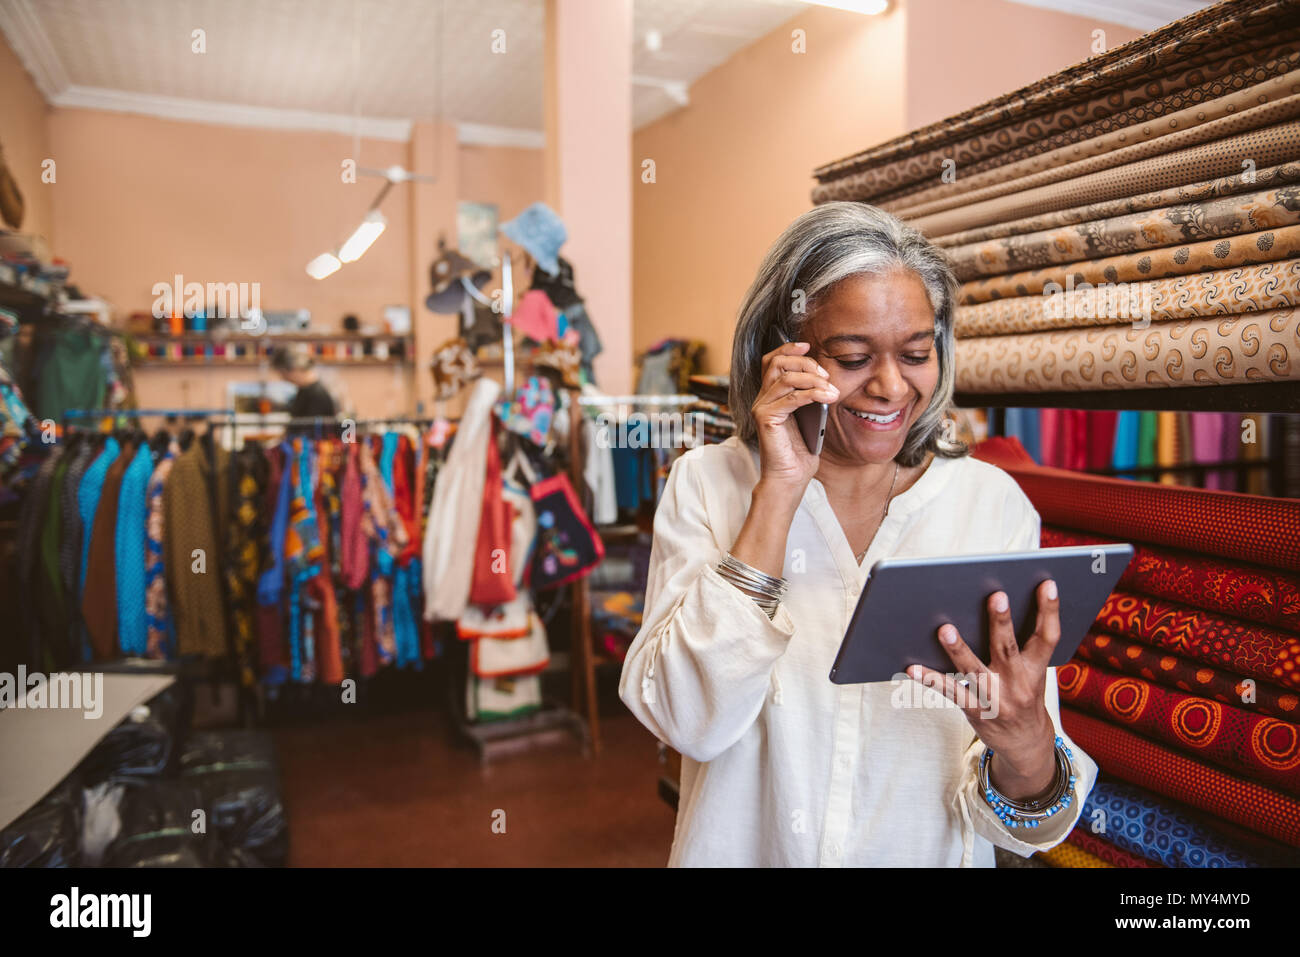 Lächelnd reife Stoff shop besitzer mit einem digitalen Tablet und Gespräche am Mobiltelefon im Stehen von bunten Tüchern und Textilien Stockfoto